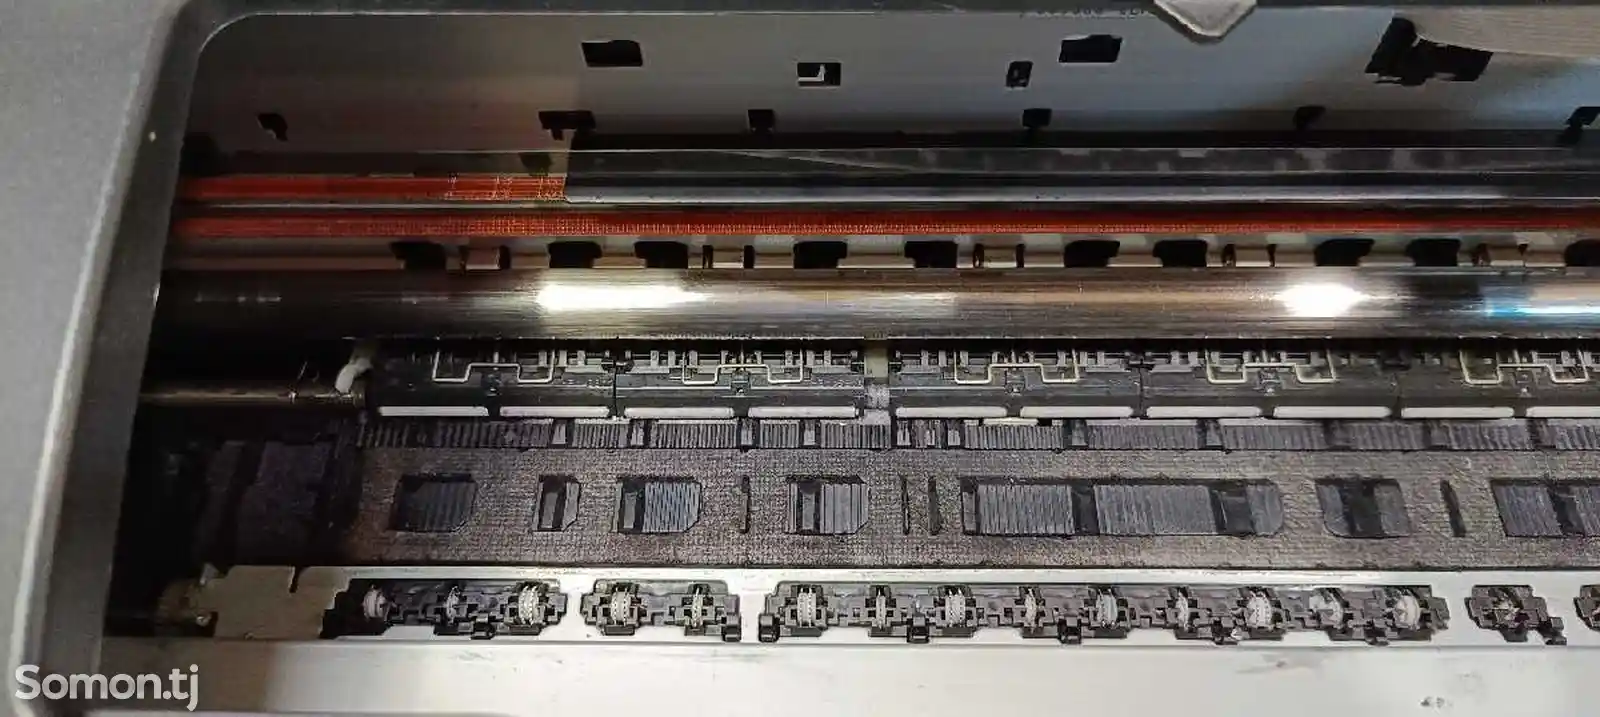 Принтер Epson 1410 a3-7